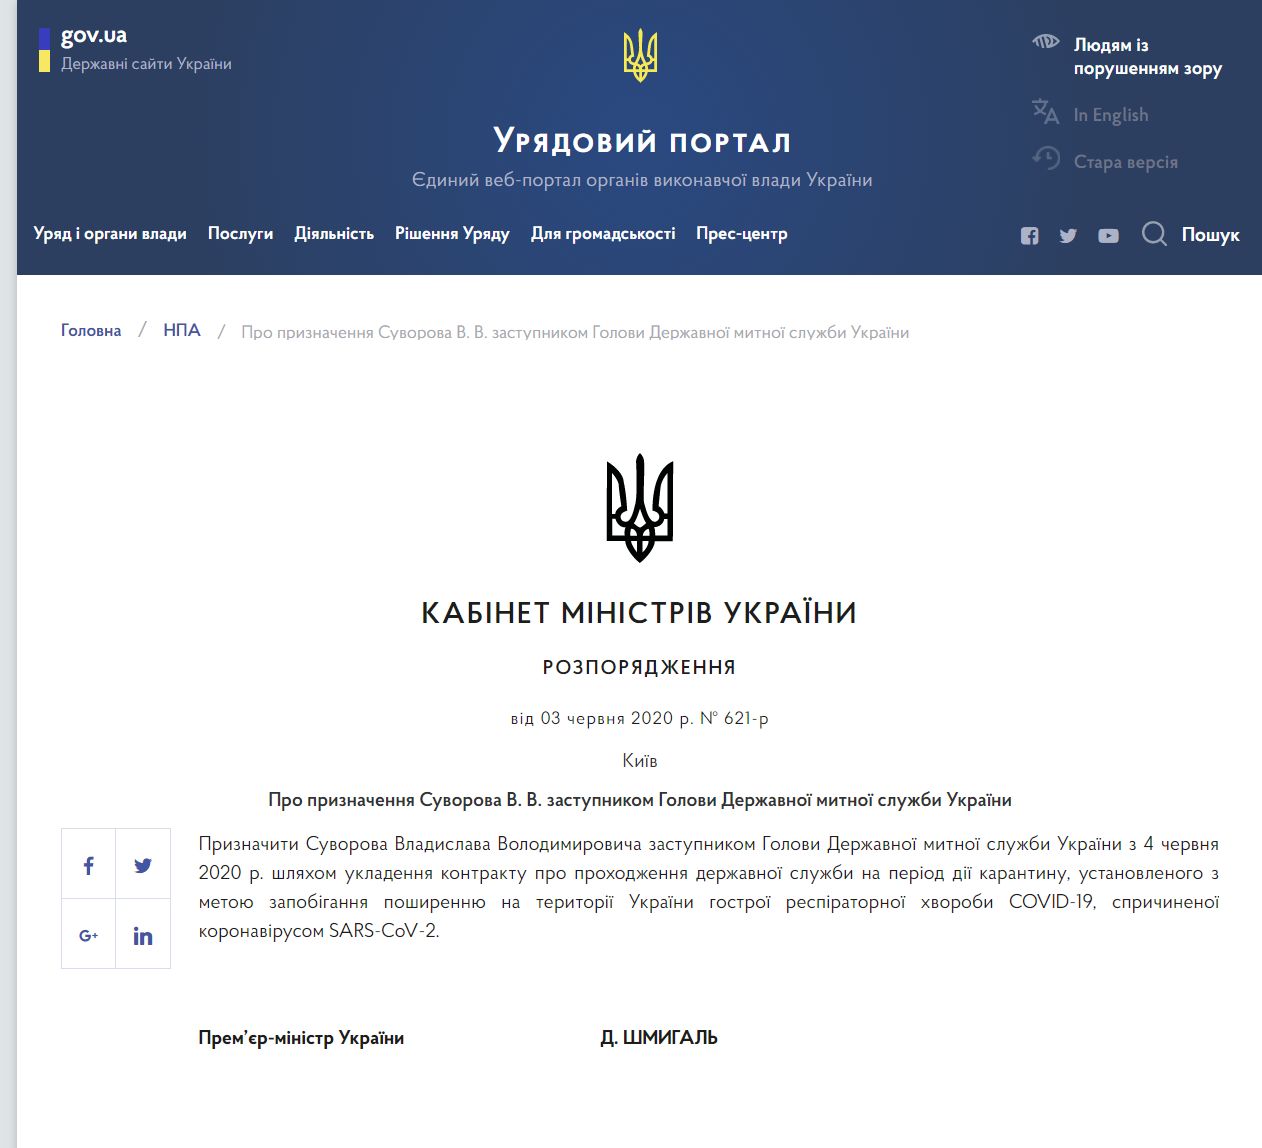 https://www.kmu.gov.ua/npas/pro-priznachennya-suvorova-v-v-zast-a621r